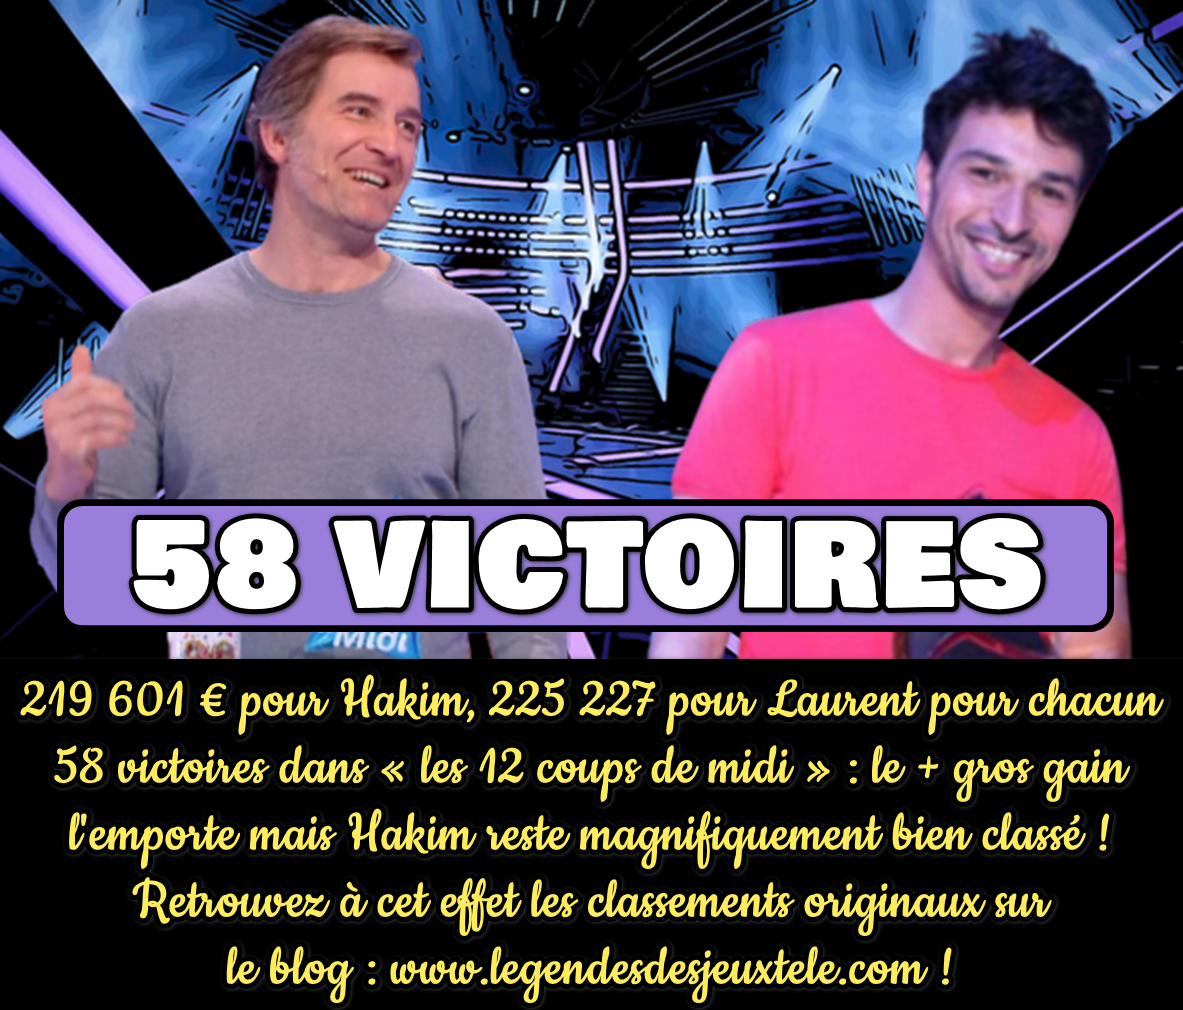 58 victoires et l’égalité avec Hakim pour Laurent des « douze coups de midi » ! Qui prend la tête ?